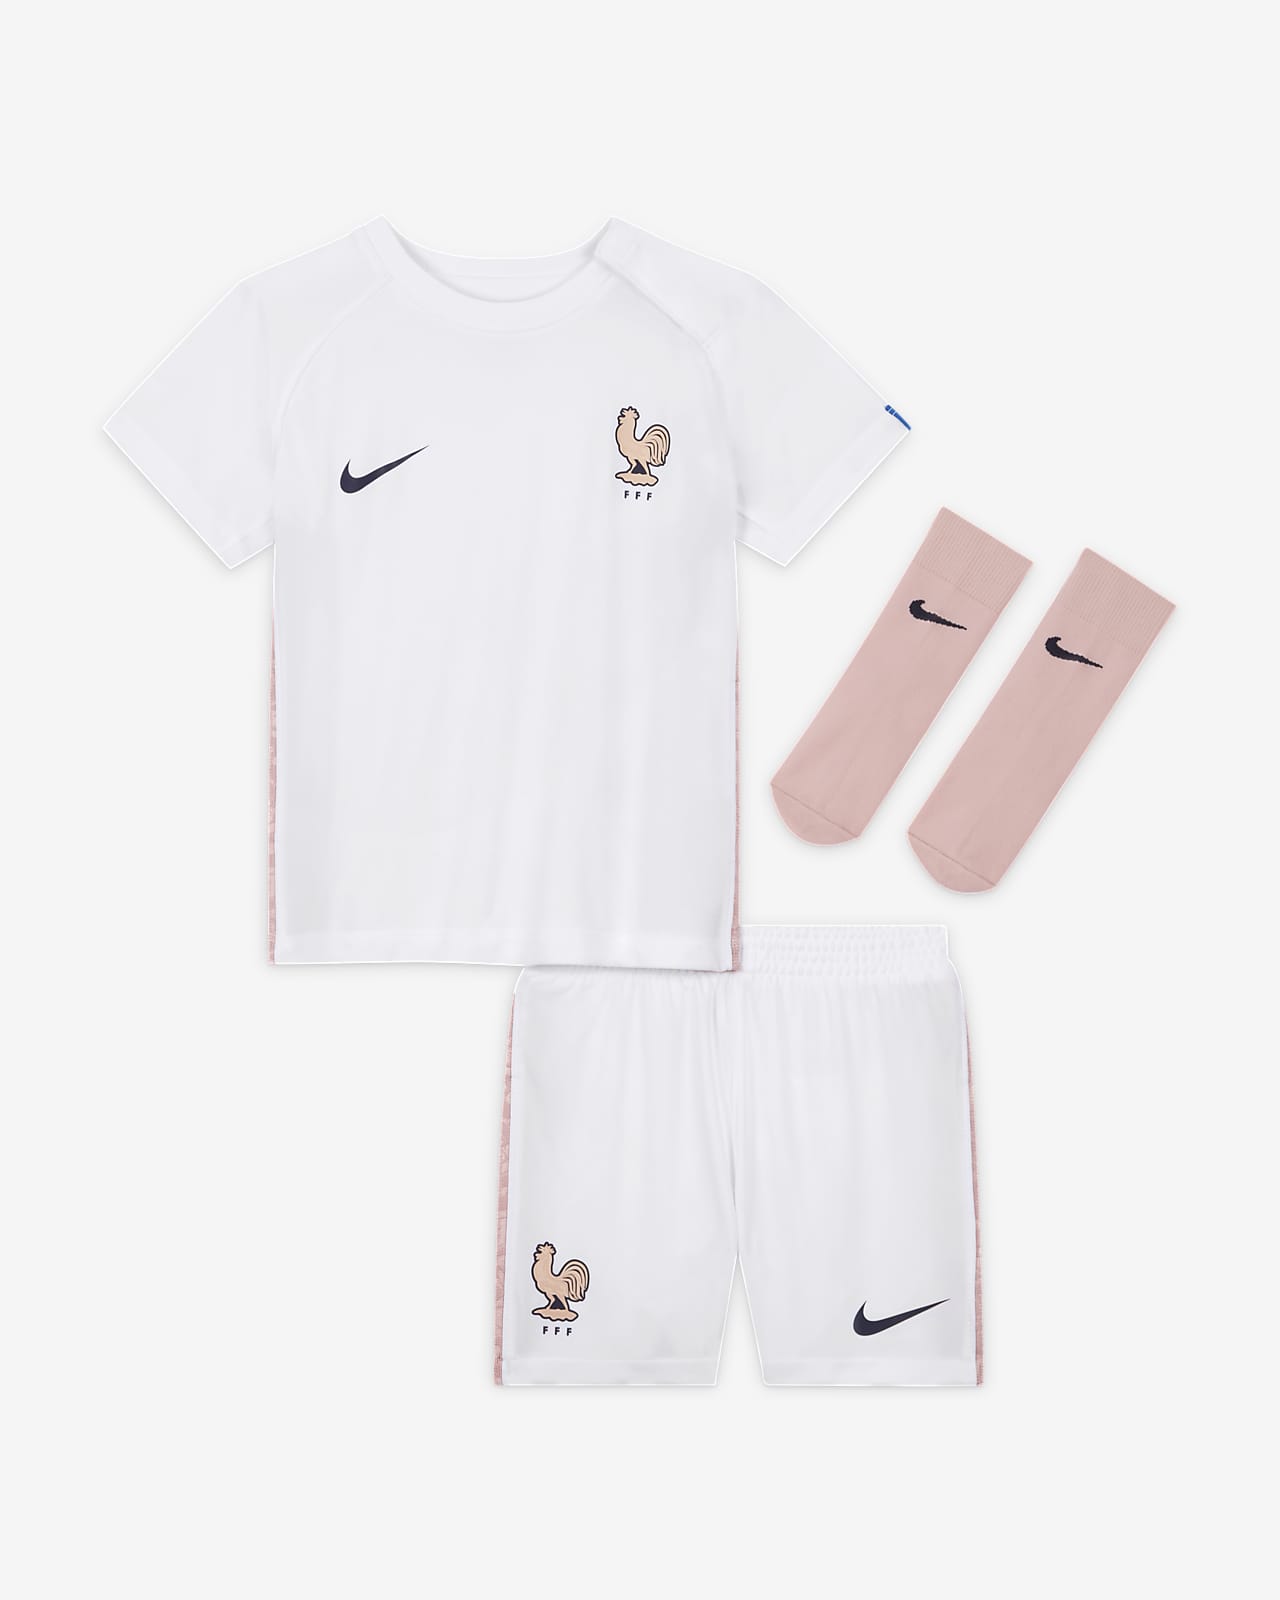 Fotbollsställ Nike FFF (bortaställ) för baby/små barn